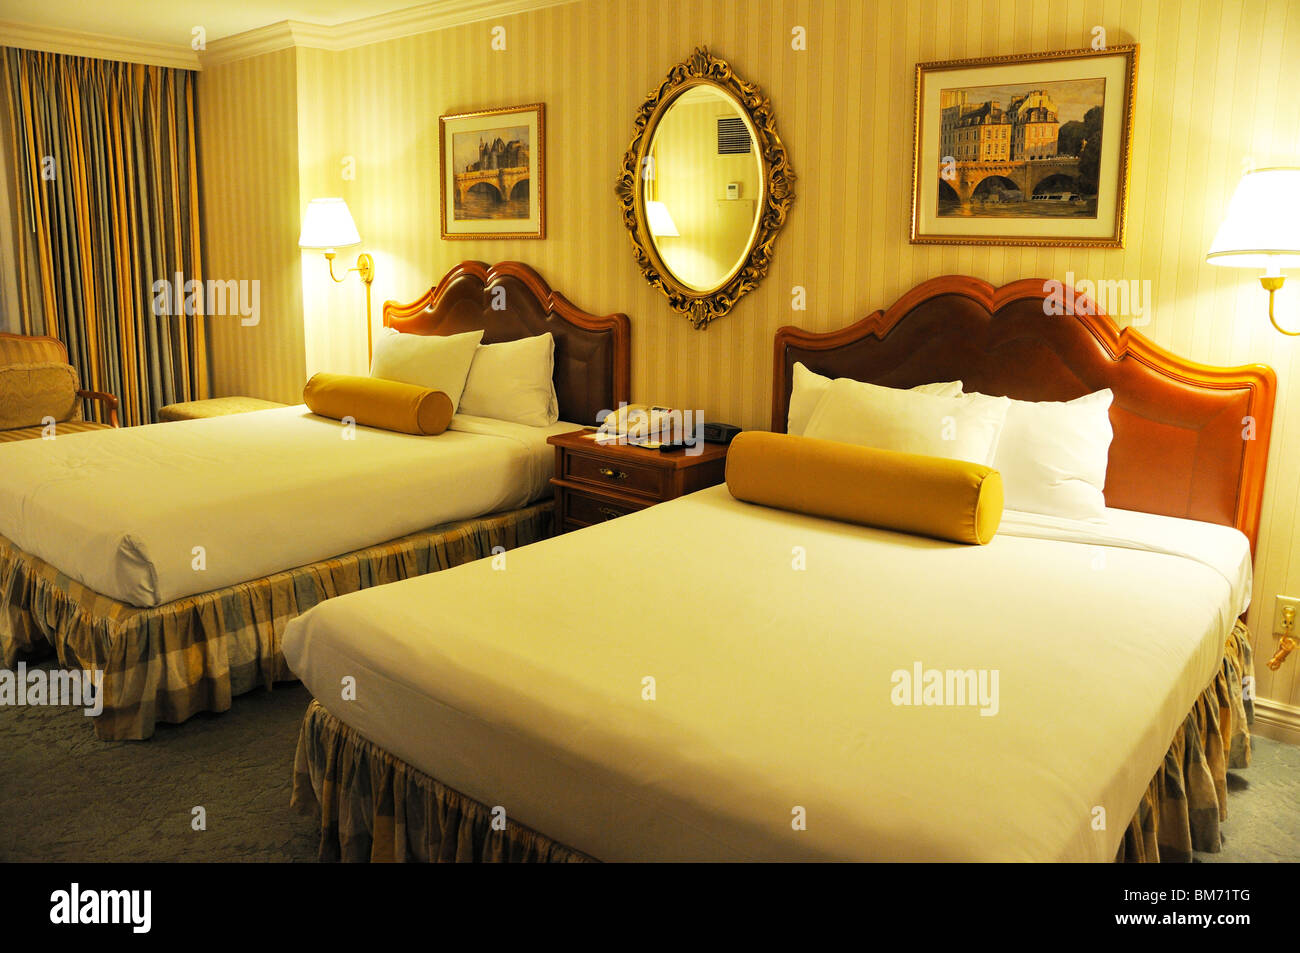 Hotel Paris room, Las Vegas, USA Stock Photo - Alamy